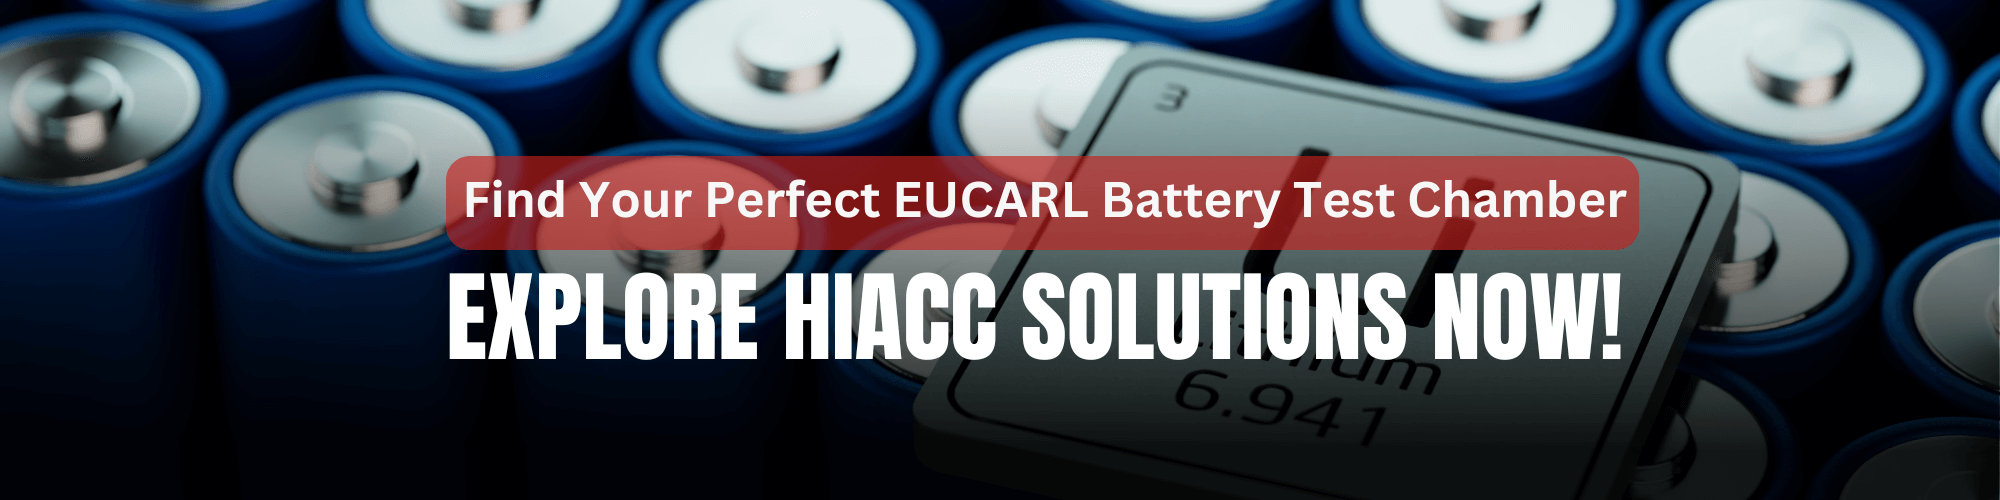 HIACC_EUCARL_battery